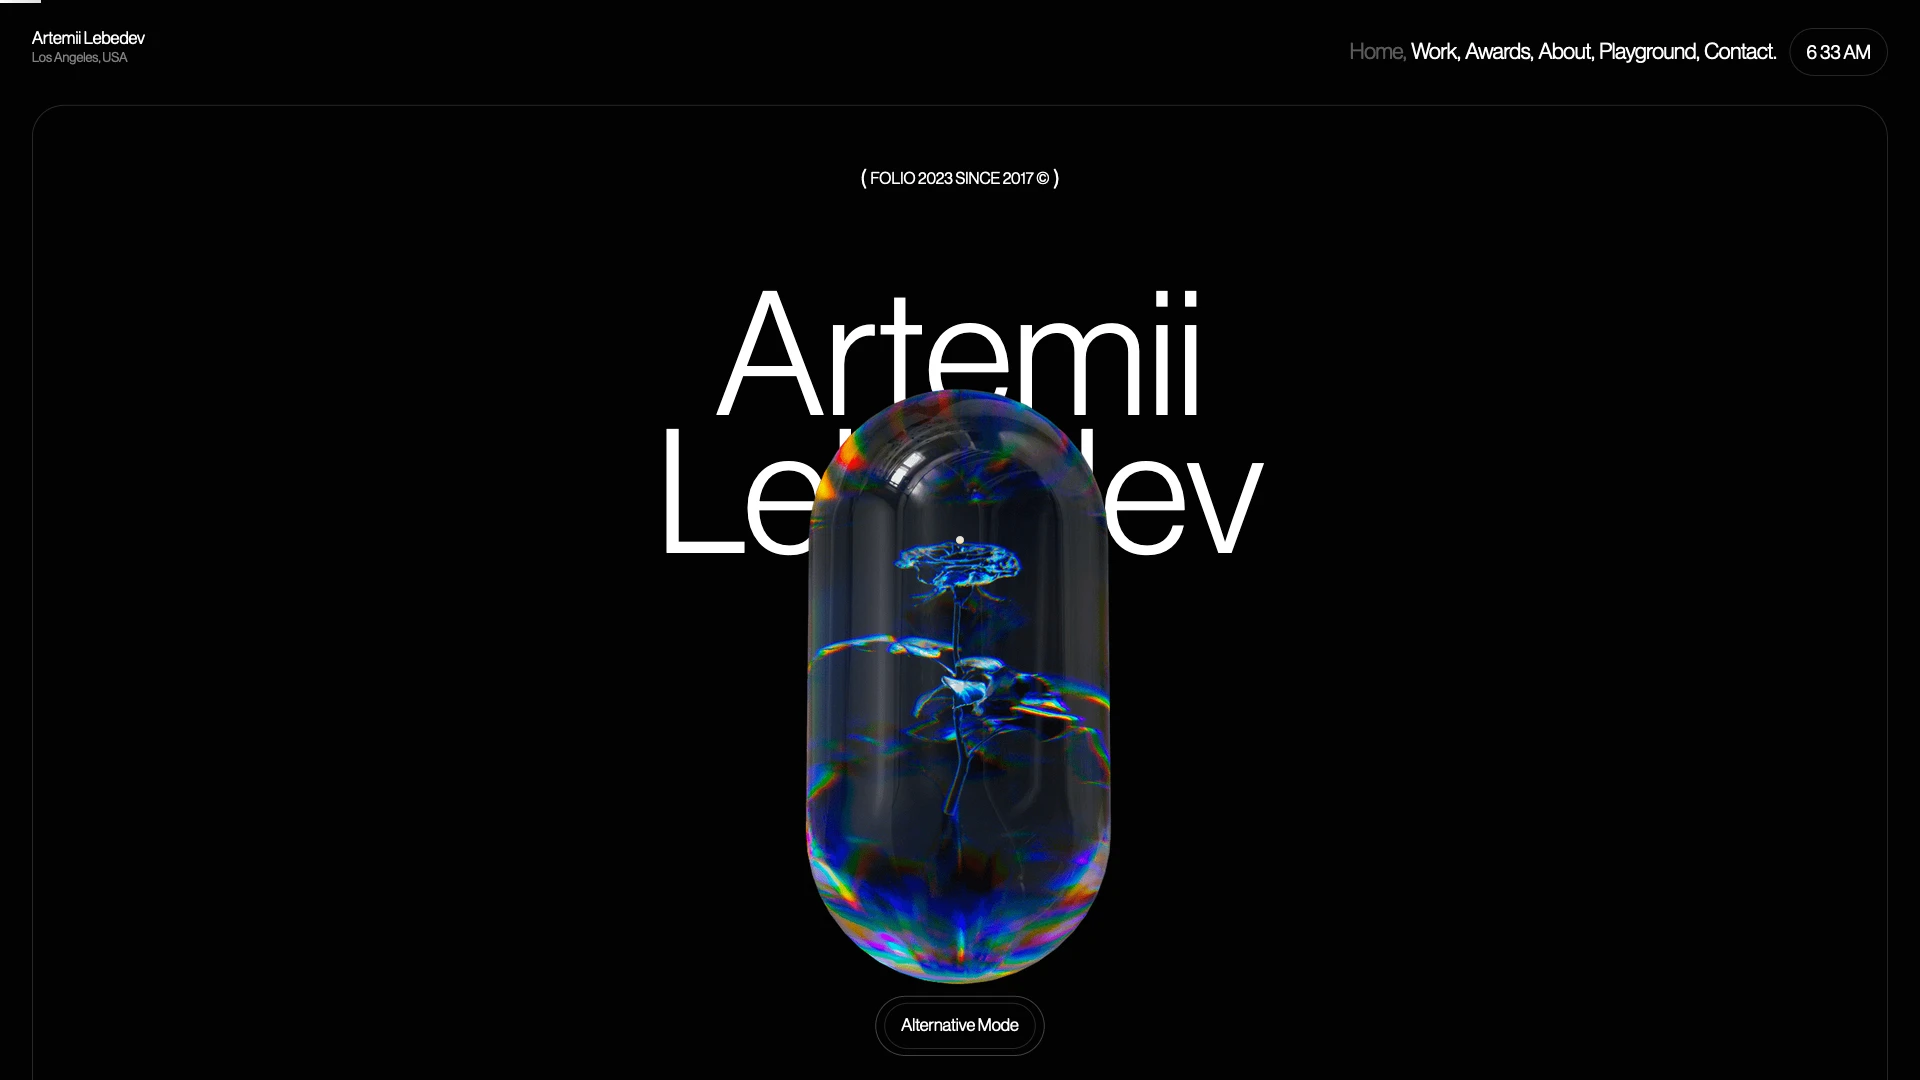 Artemii Lebedev